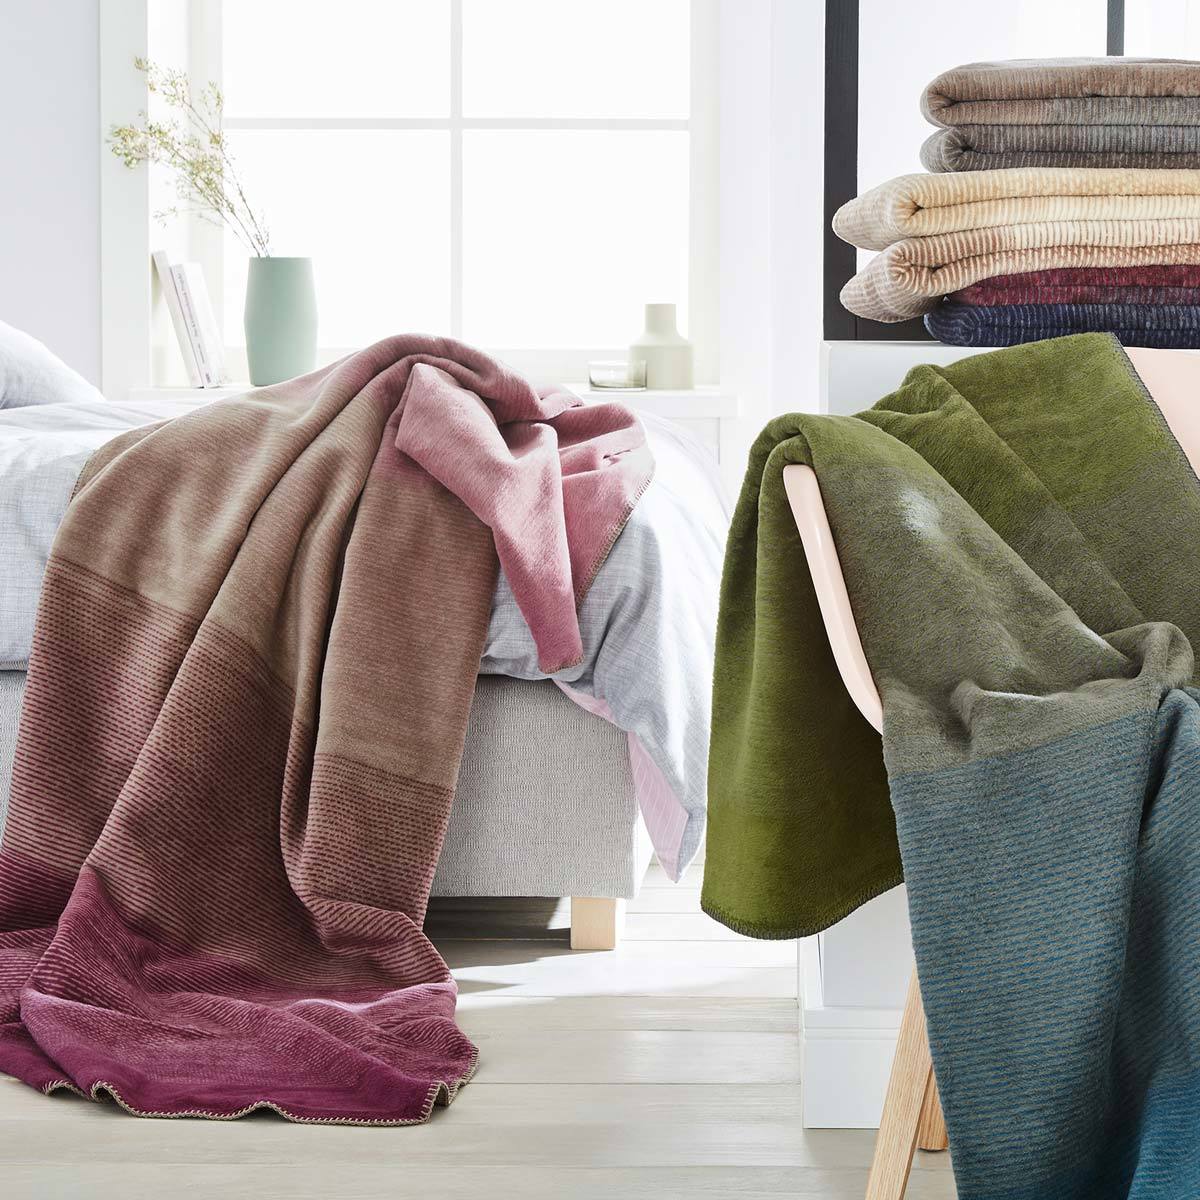 Ibena Jacquard Decke Toronto günstig online kaufen bei Bettwaren Shop